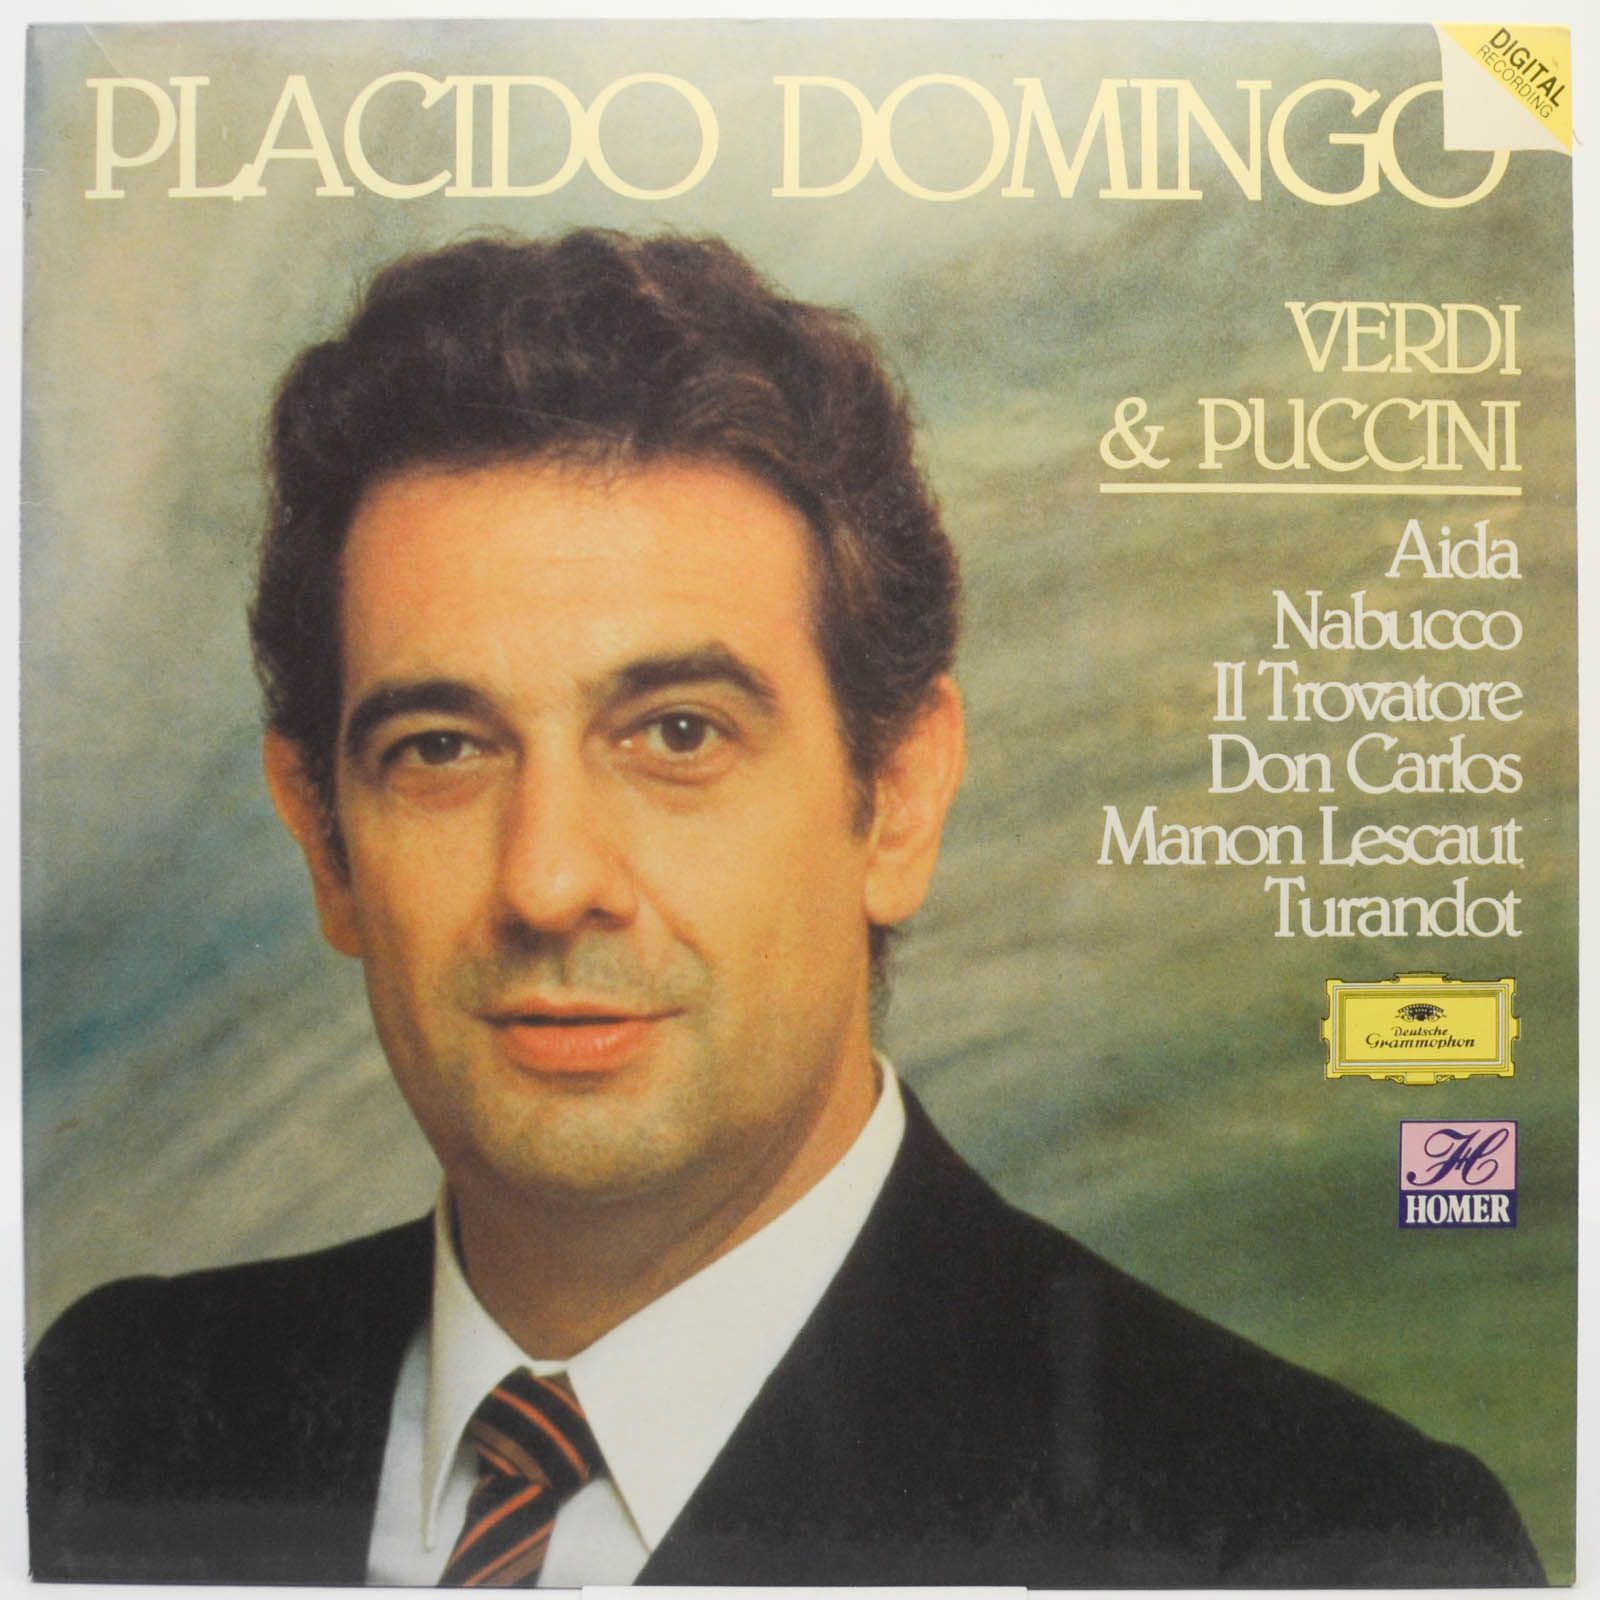 Placido Domingo — Verdi & Puccini, 1985